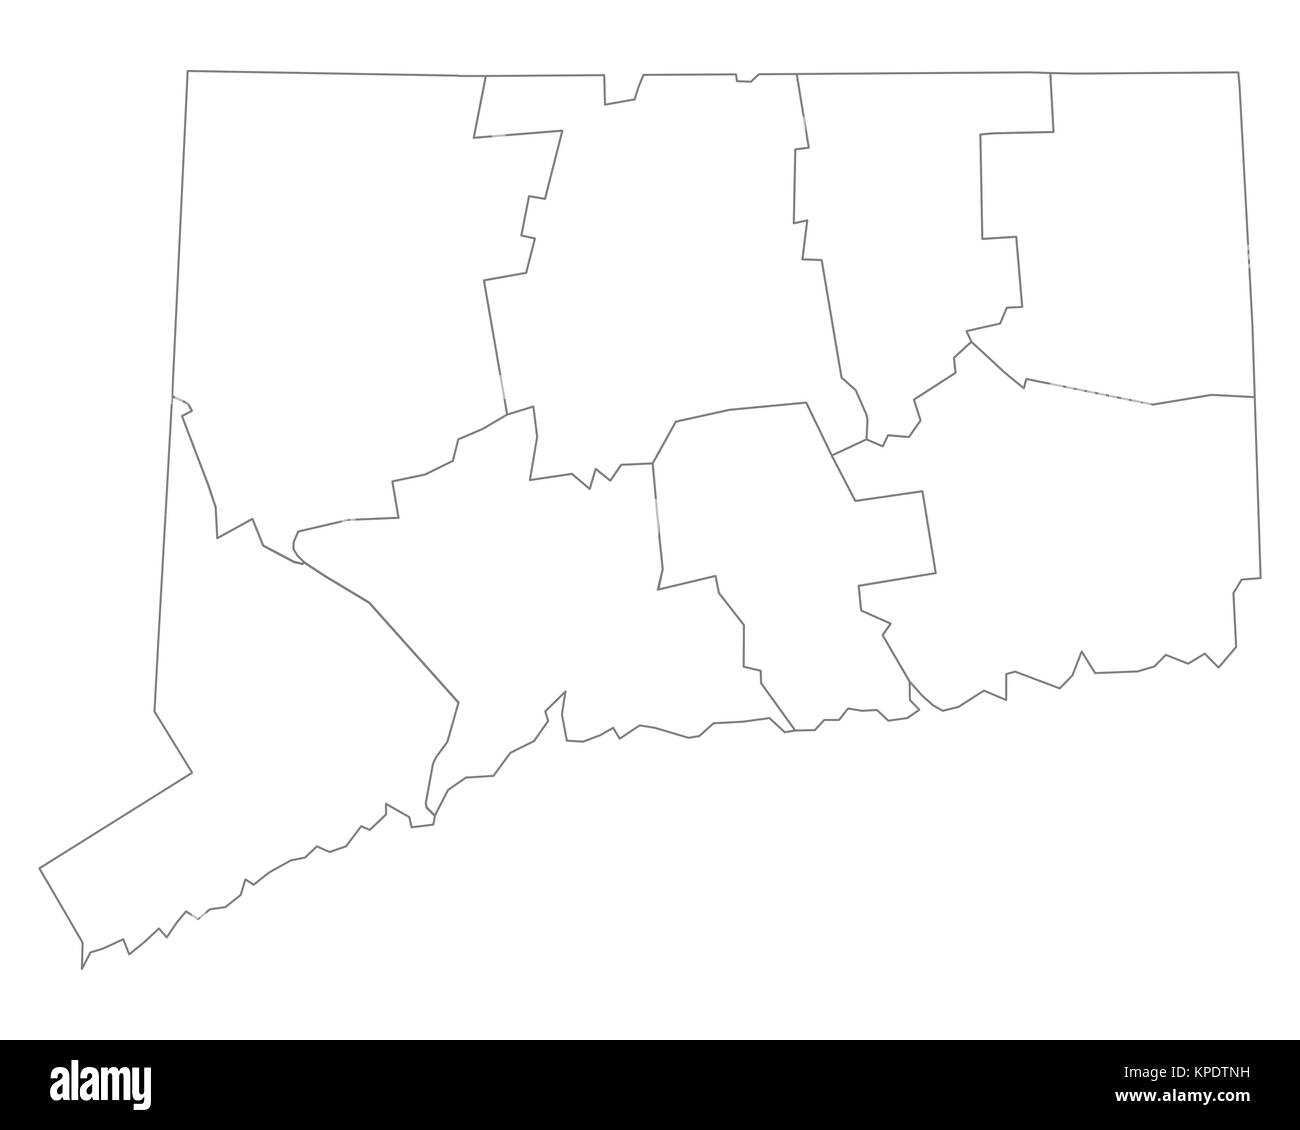 Map Of Connecticut KPDTNH 